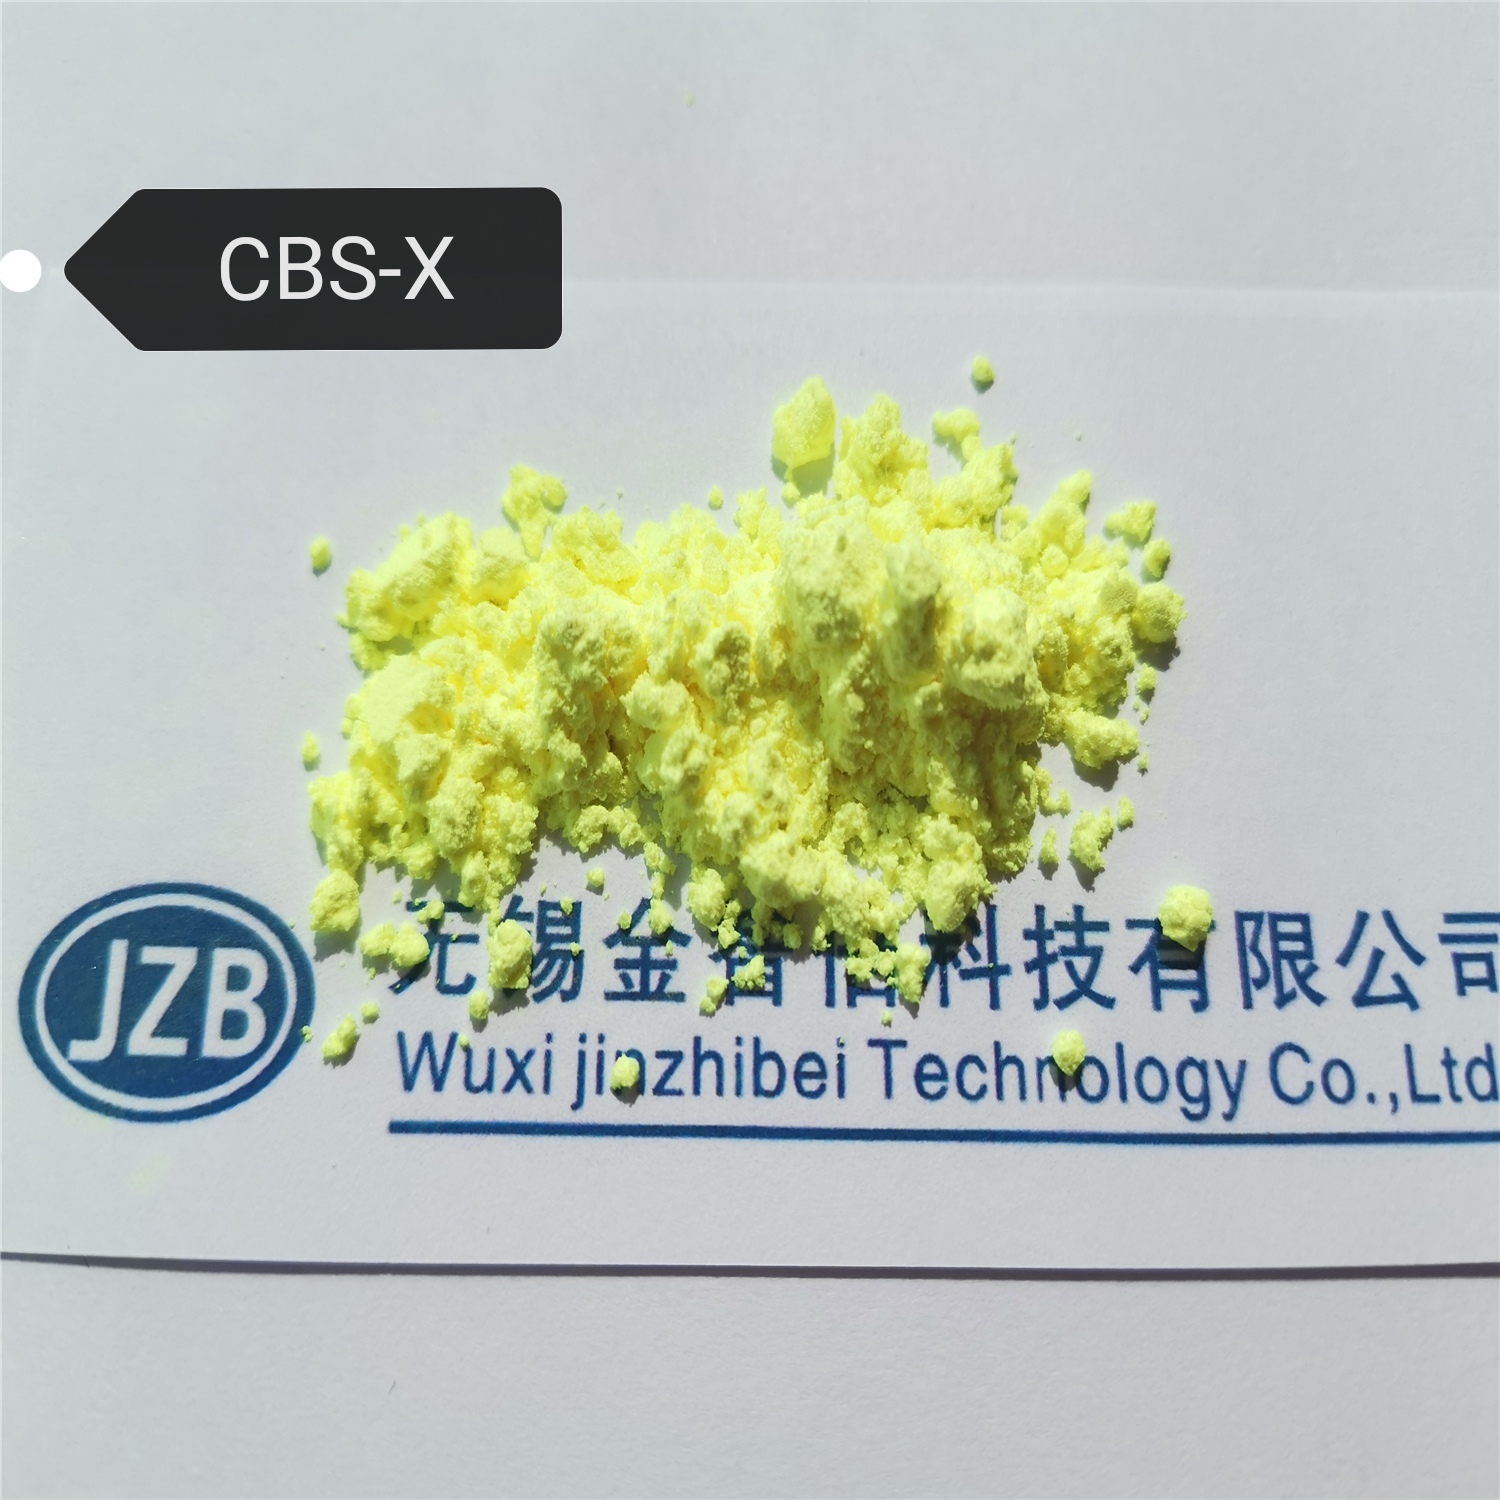 荧光增白剂 CBS-X